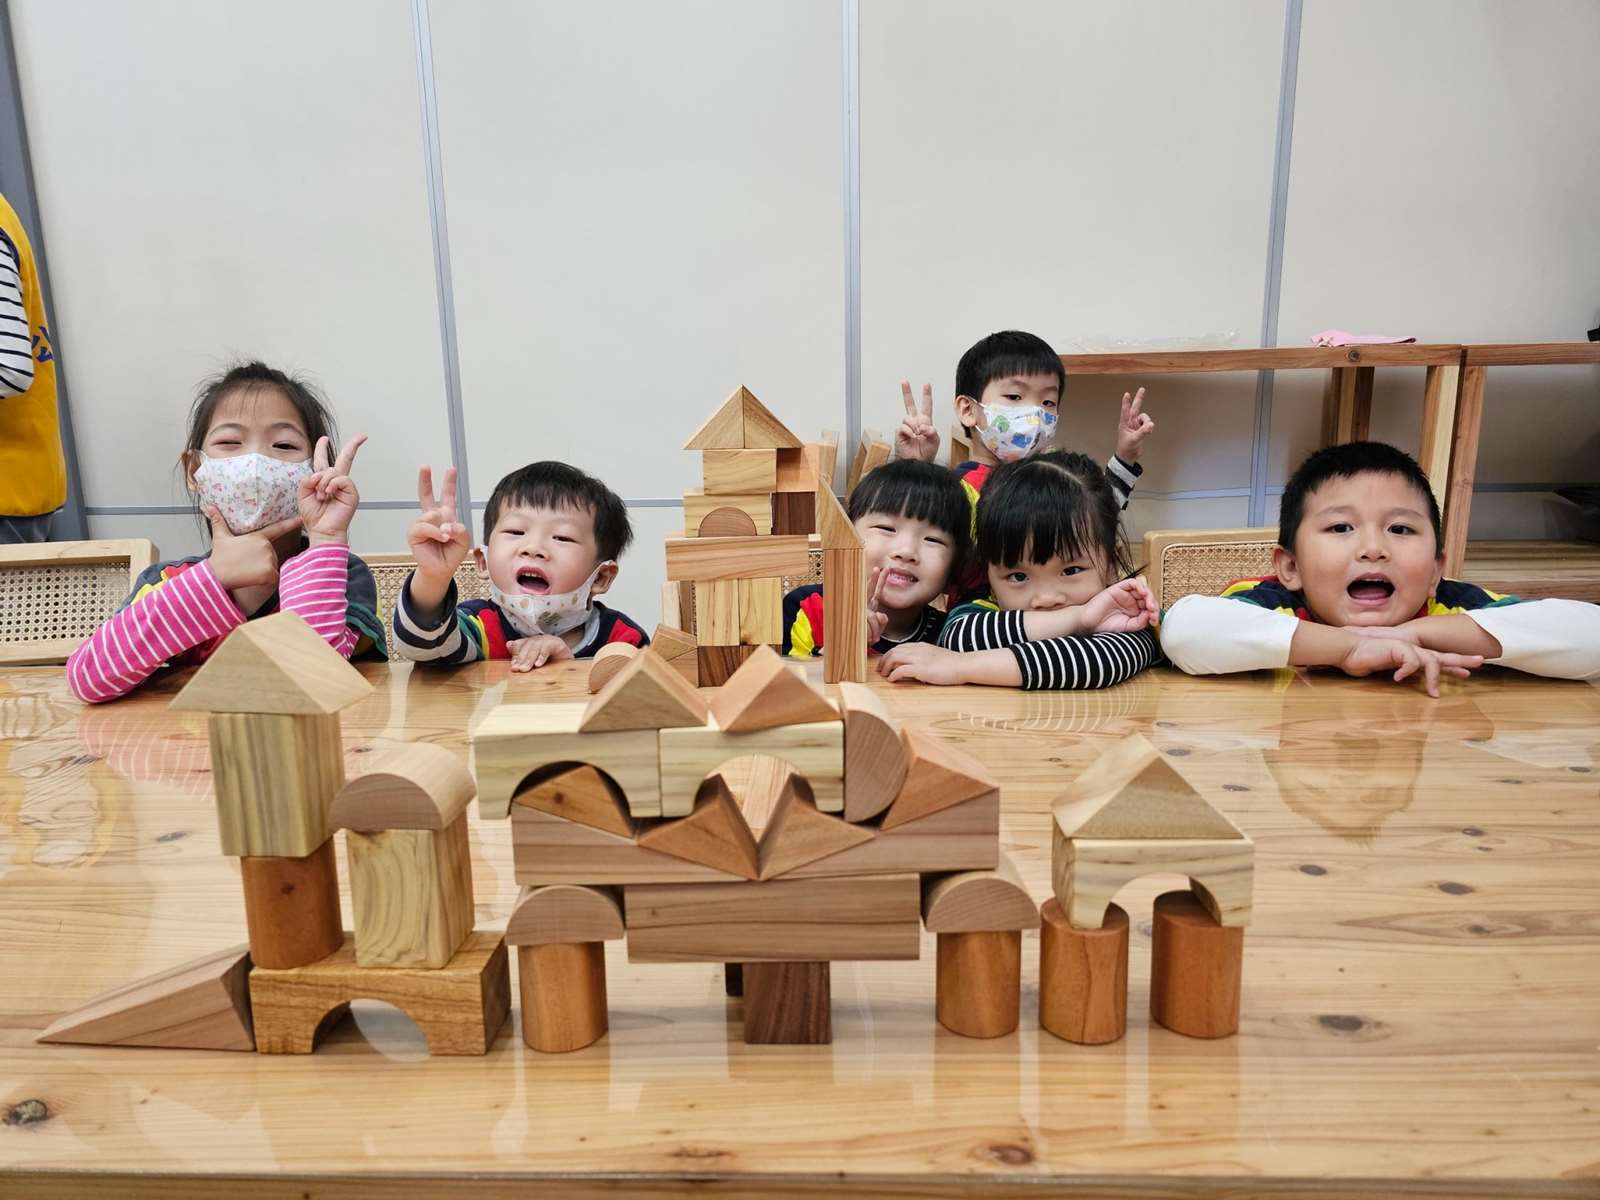 來跟木材朋友玩遊戲吧~8種樹木製成的積木組，一起感受台灣國產材的溫潤手感。